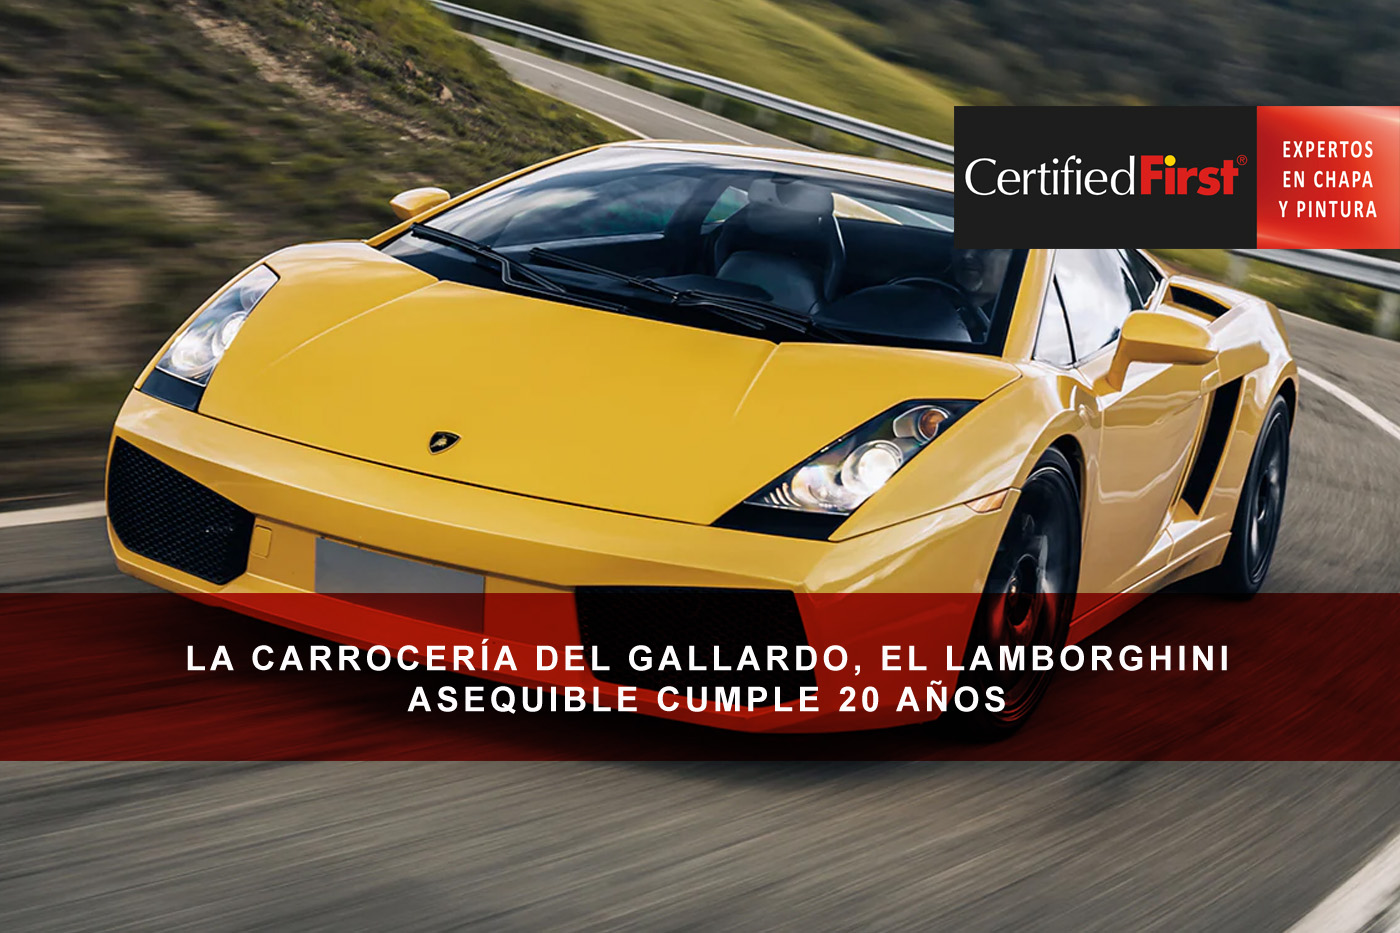 La carrocería del Gallardo, el Lamborghini asequible cumple 20 años